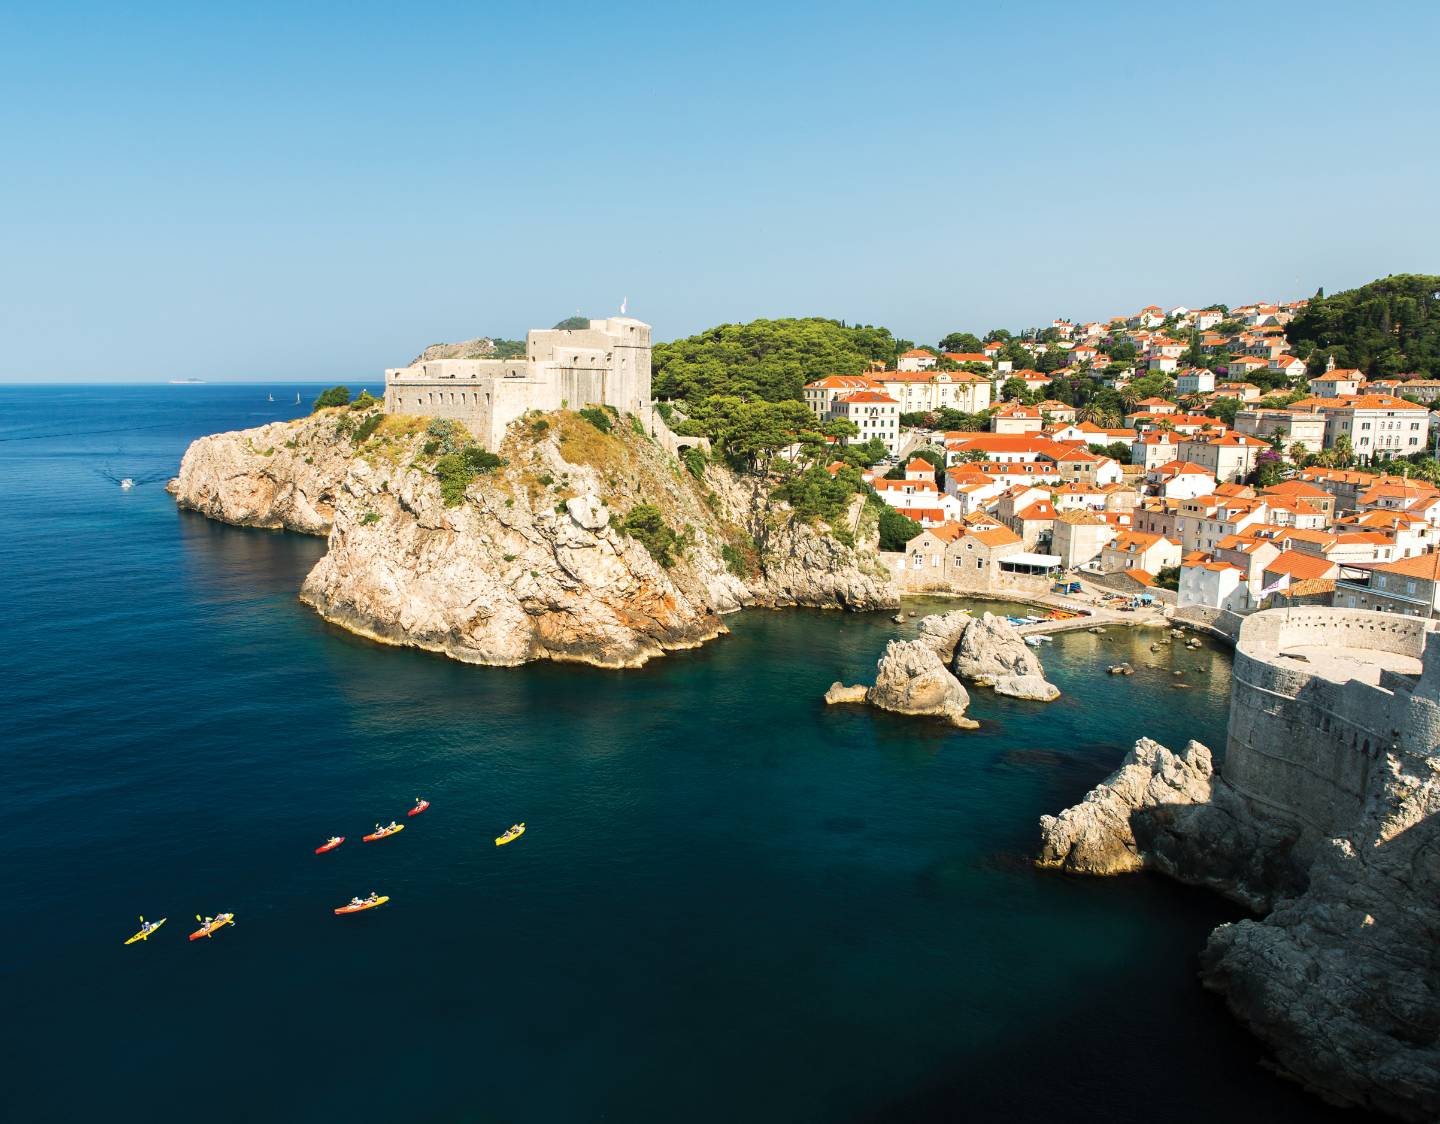 Overhead shot of croatian city of Dubrovnik